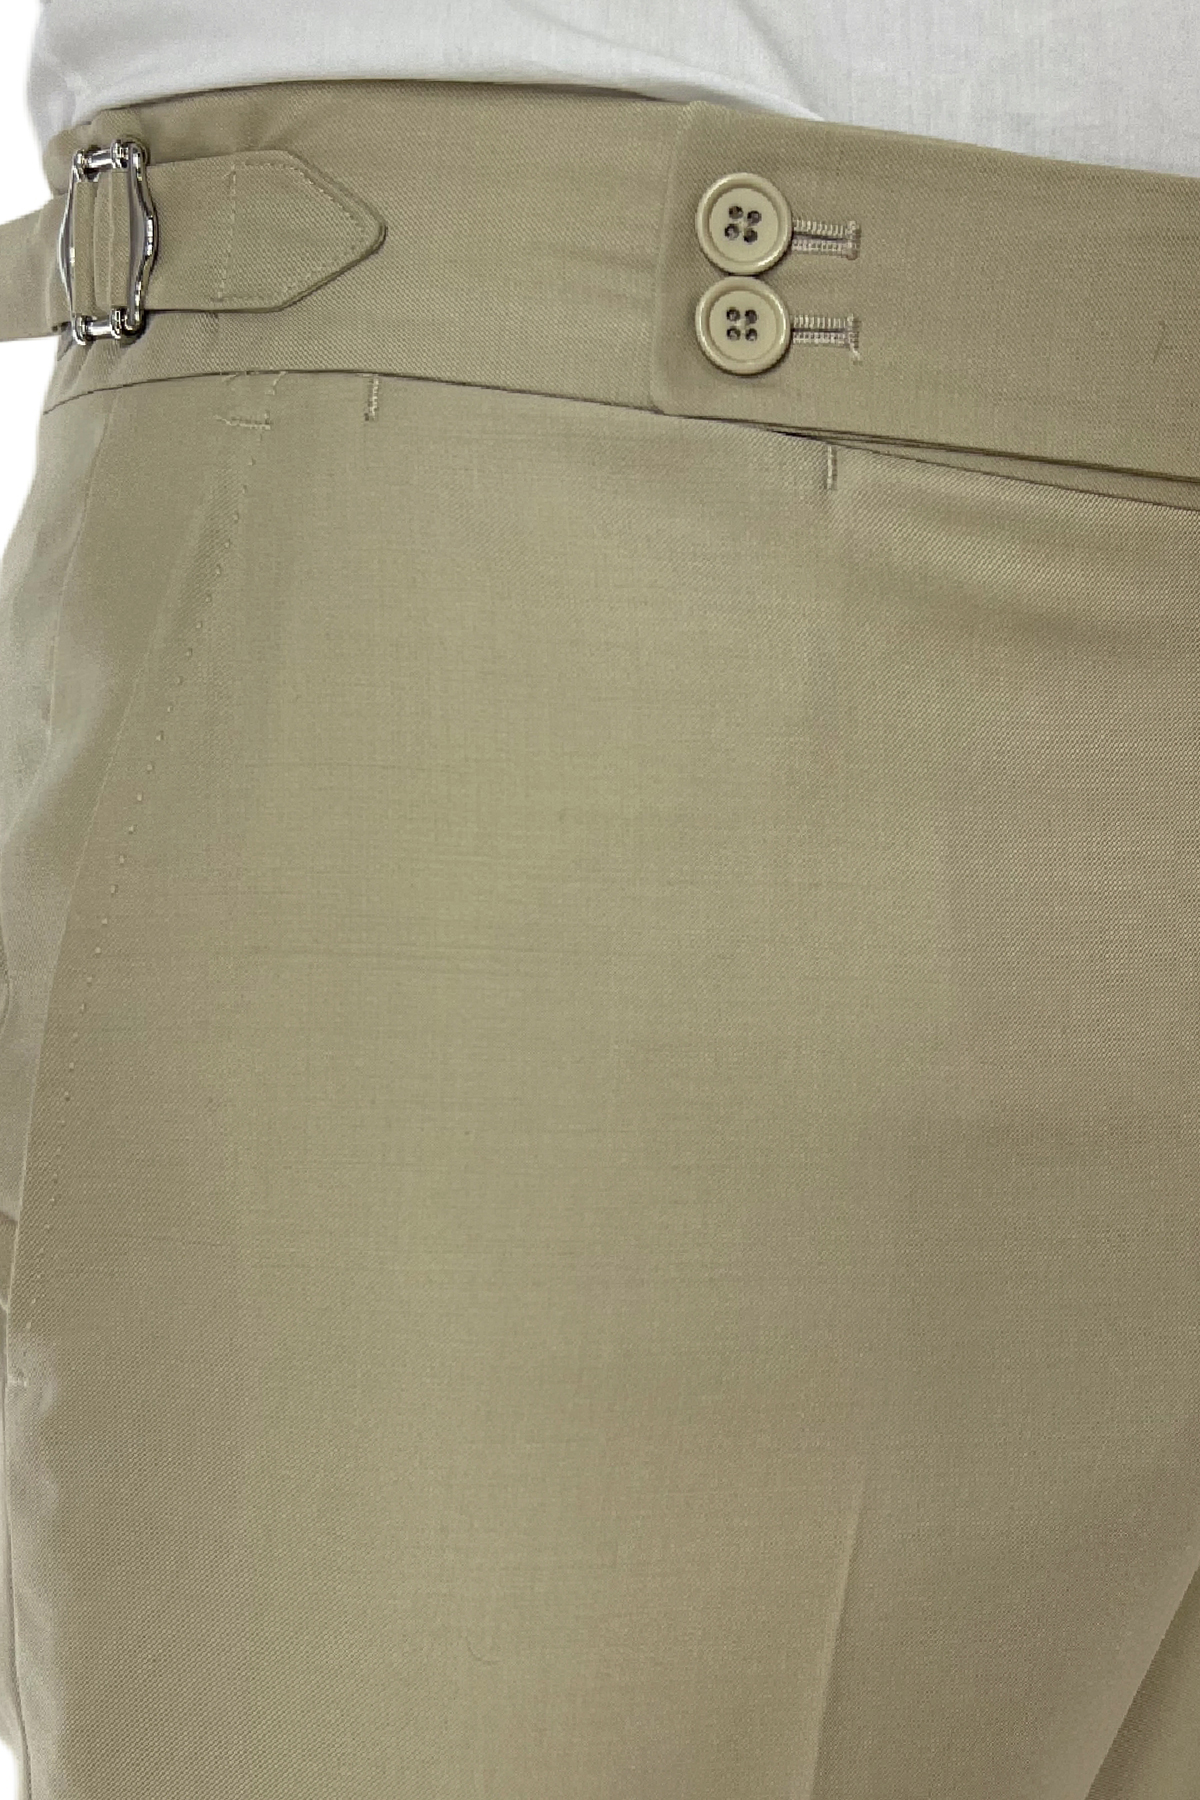 Pantalone uomo Beige vita alta tasca america in fresco lana 100% Vitale Barberis Canonico fibbie laterali e risvolto 4cm